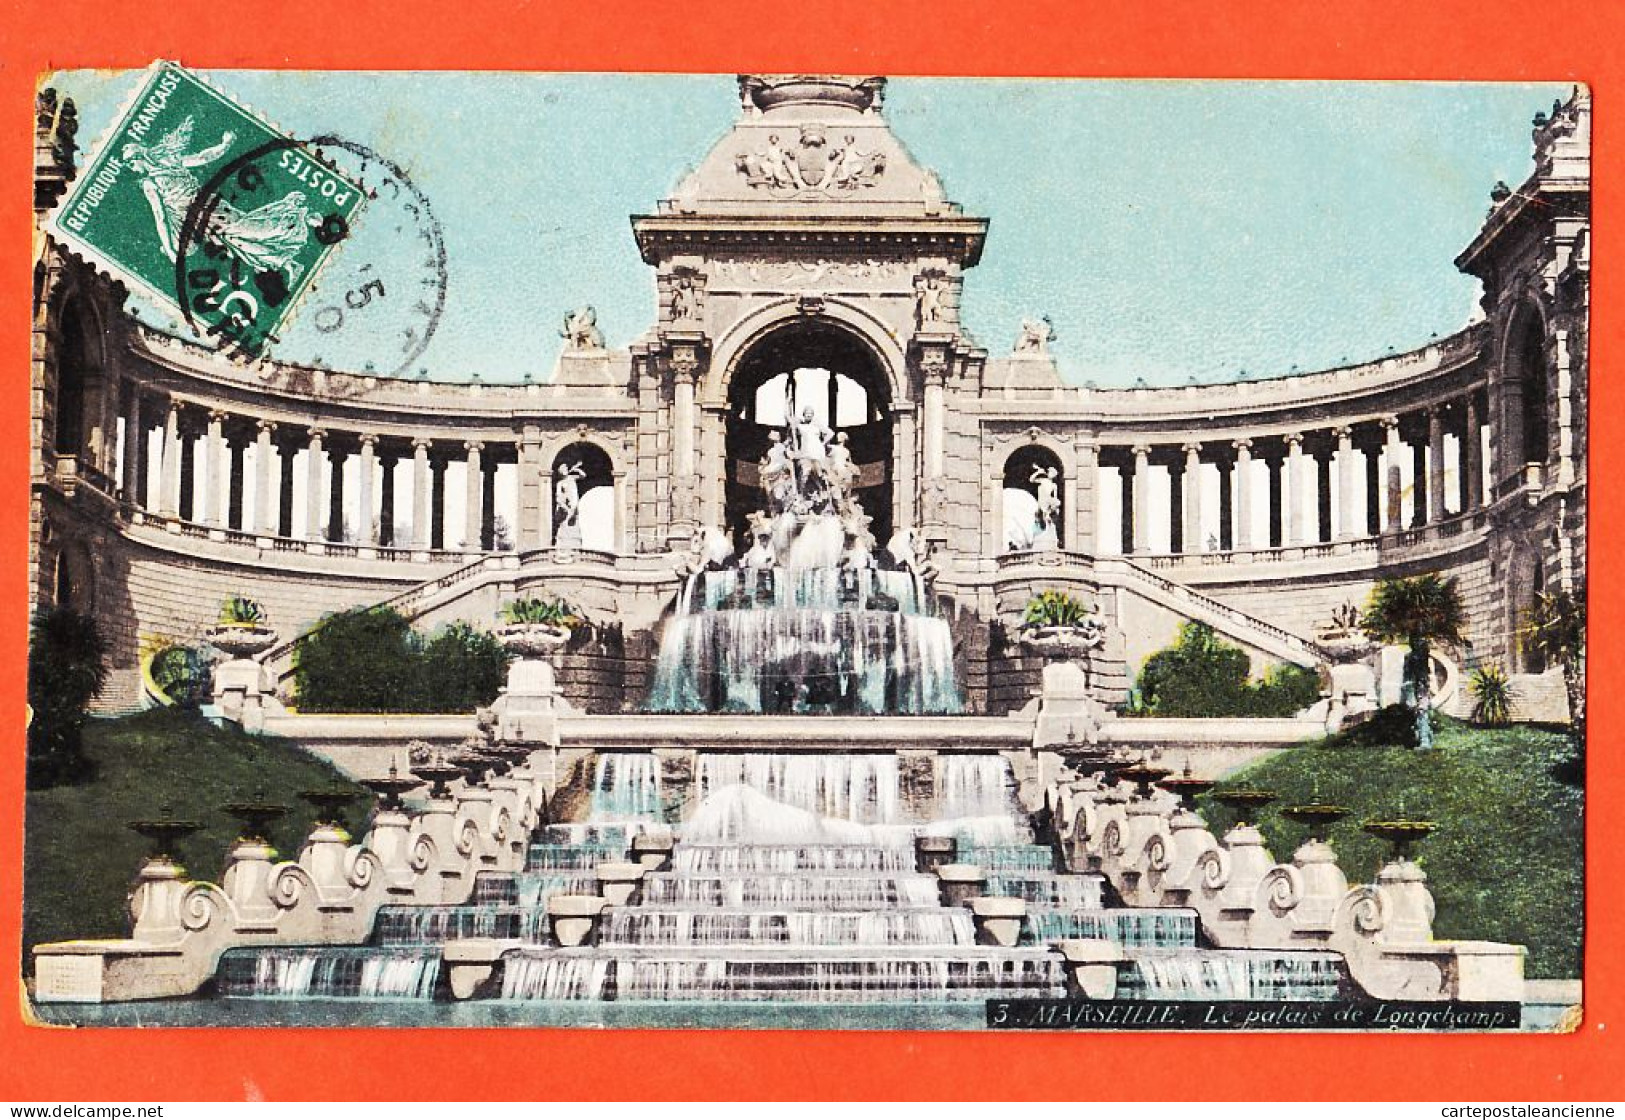 35018 / Aqua-Photo LEOPOLD VERGER 3 MARSEILLE (13) Palais LONGCHAMP 1909 à Honoré VILAREM Caporal 143e Inf - Canebière, Centro Città